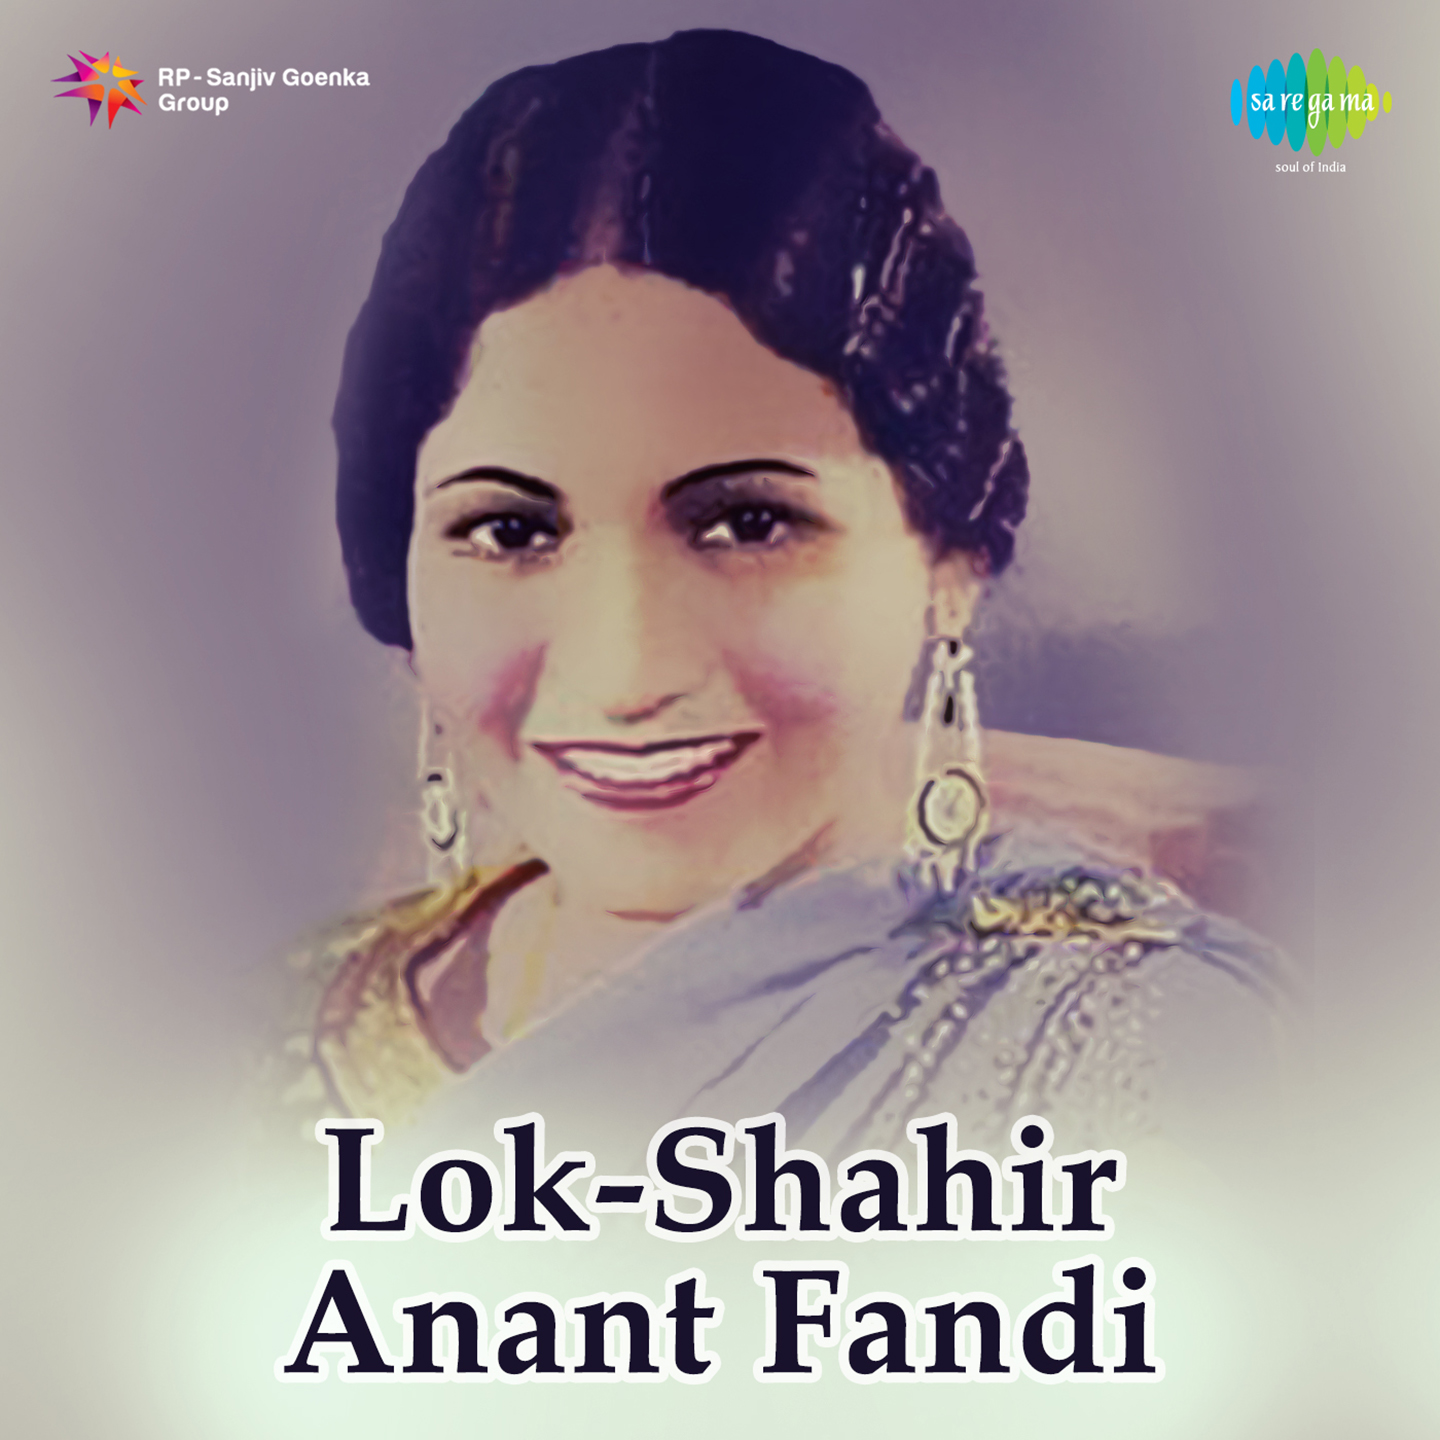 Shahir Anant Fandi